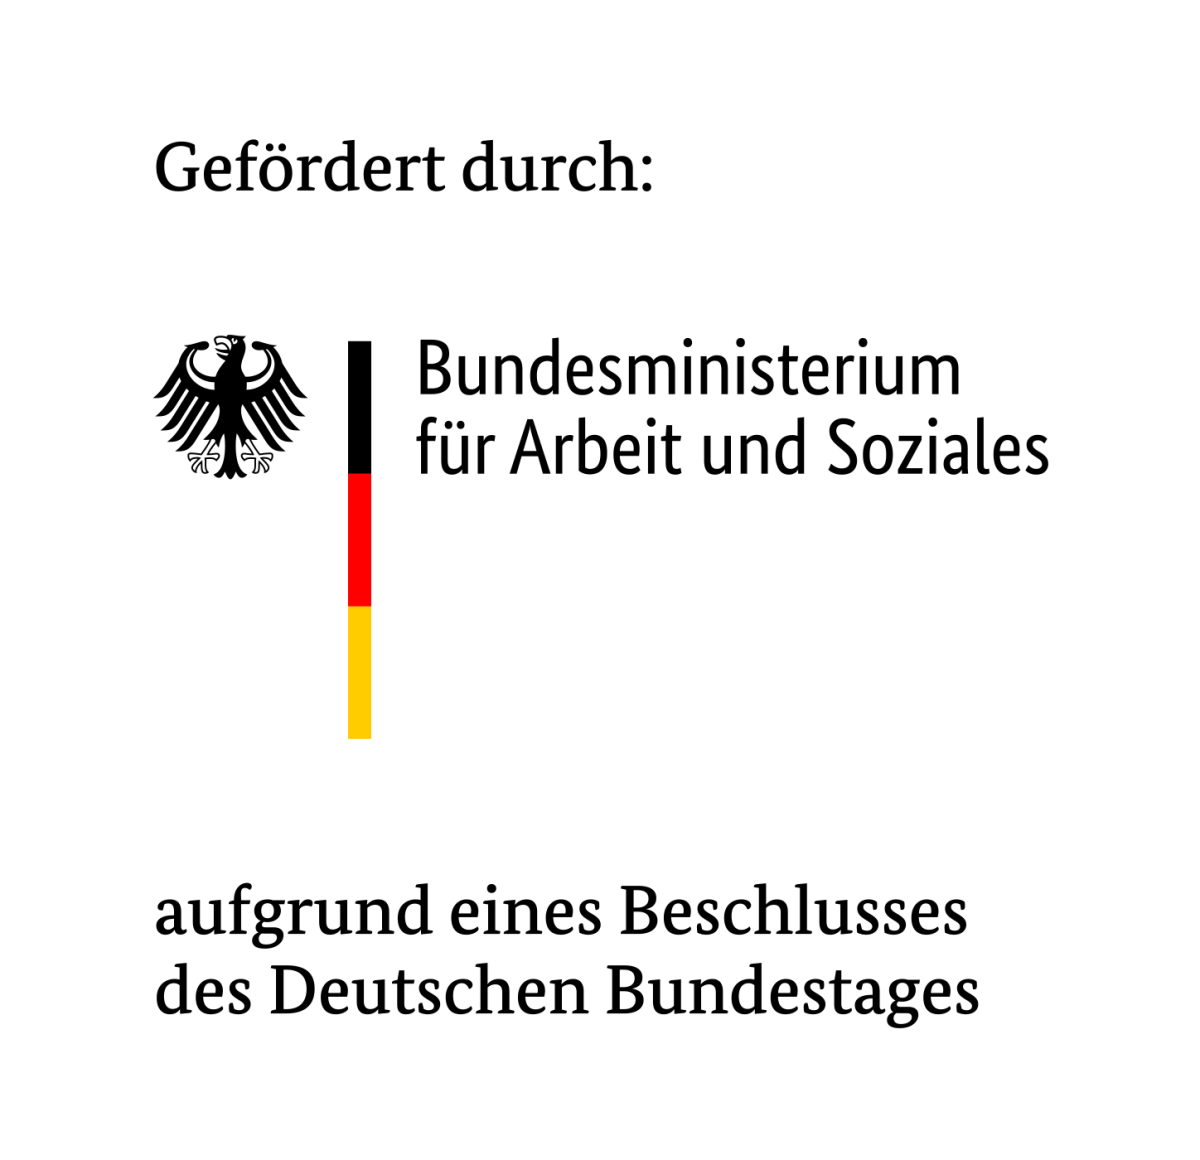 Gefördert durch Bundesministerium für Arbeit und Soziales aufgrund eines Beschlusses des Deutschen Bundestags